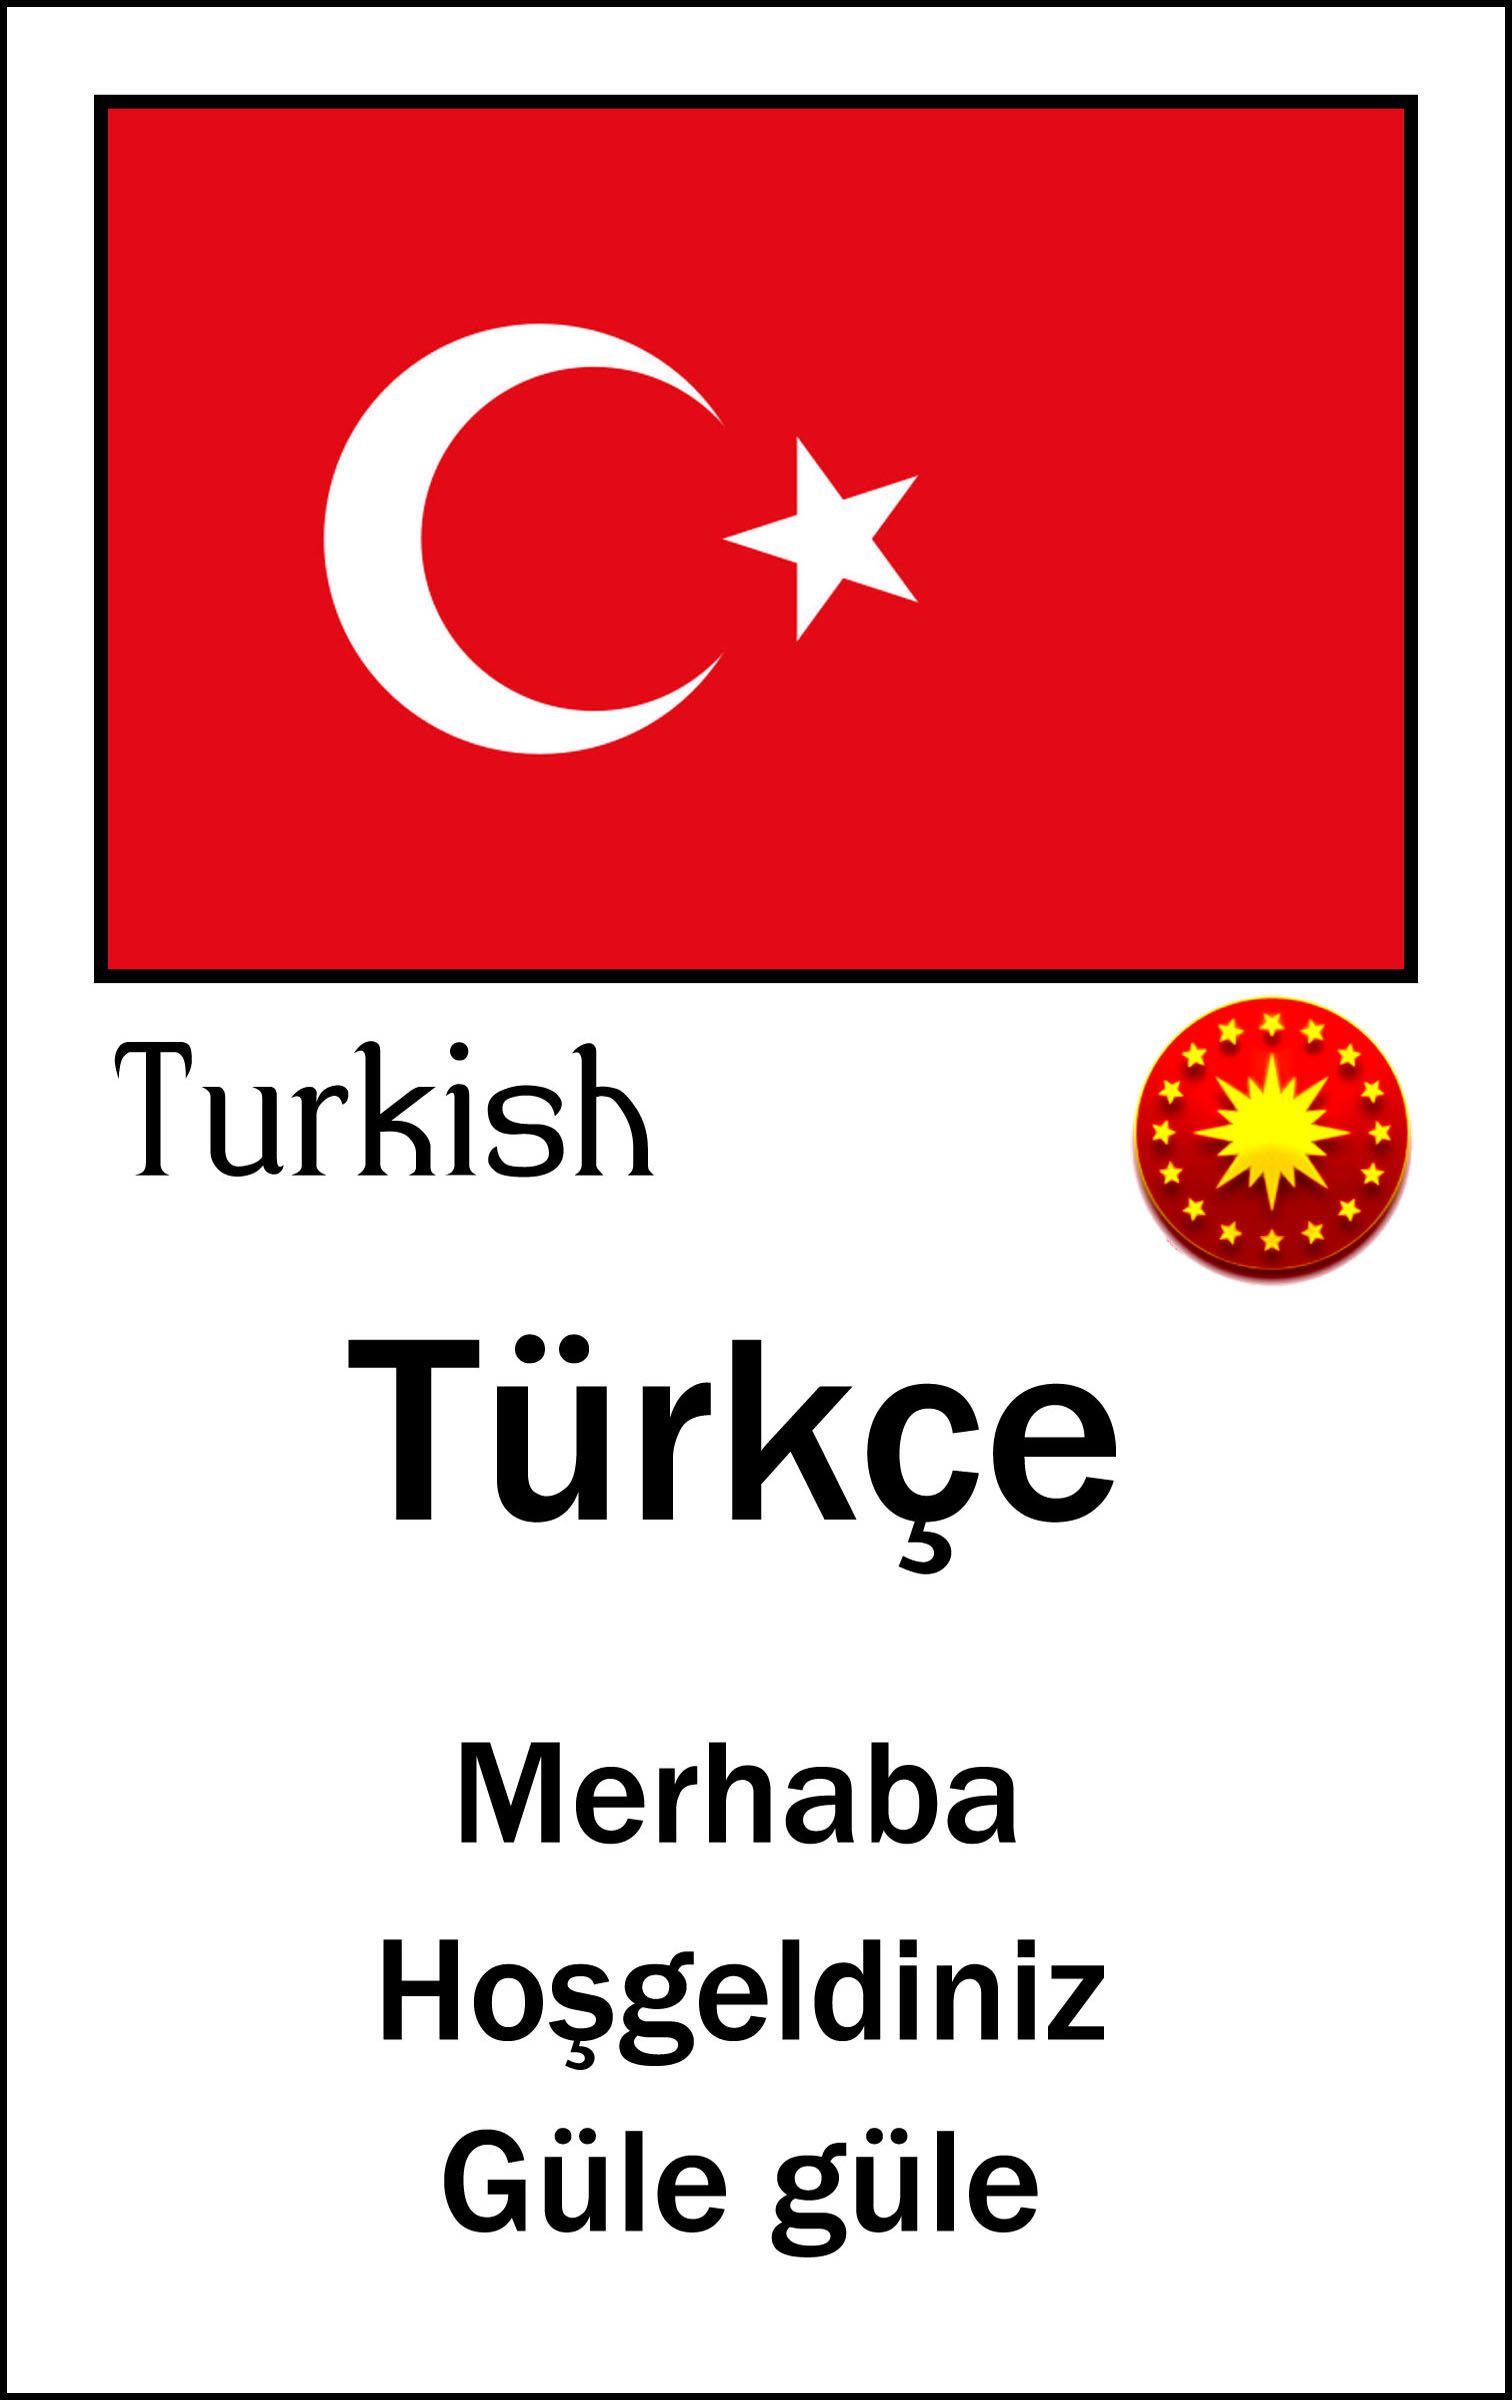 Turkish flyer